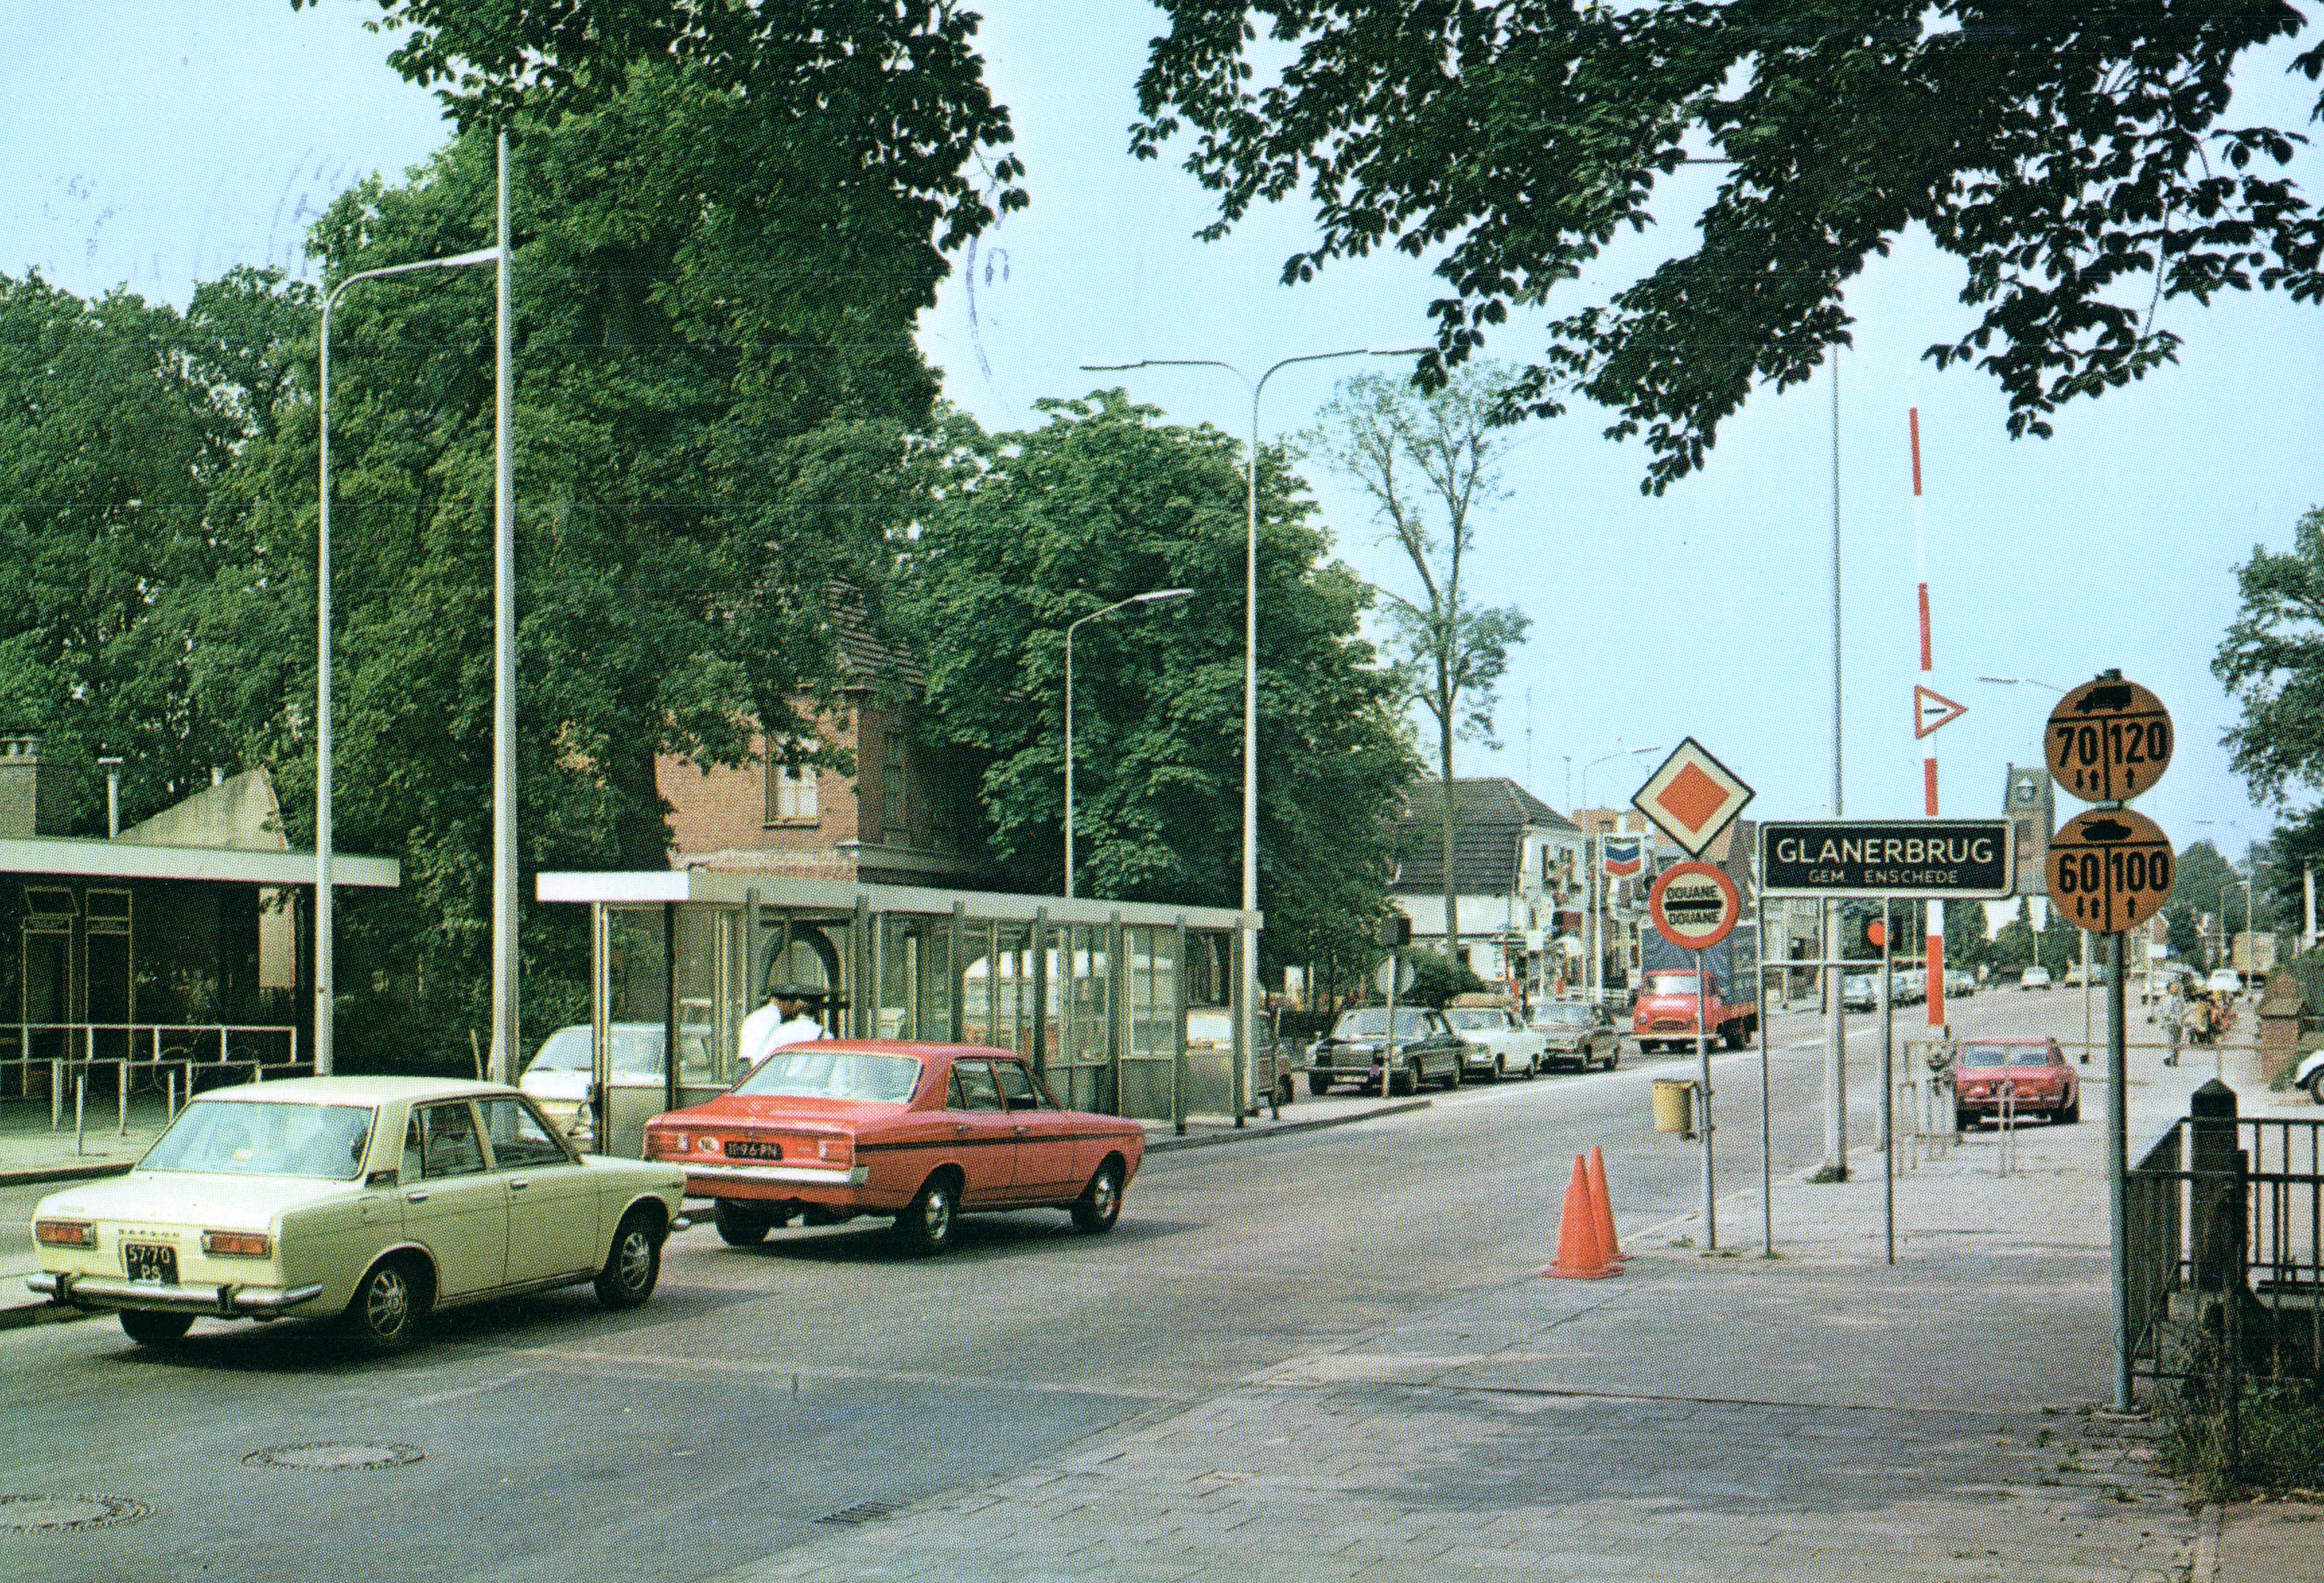 Glanerbrug-grens-1976-04388a2f.jpg